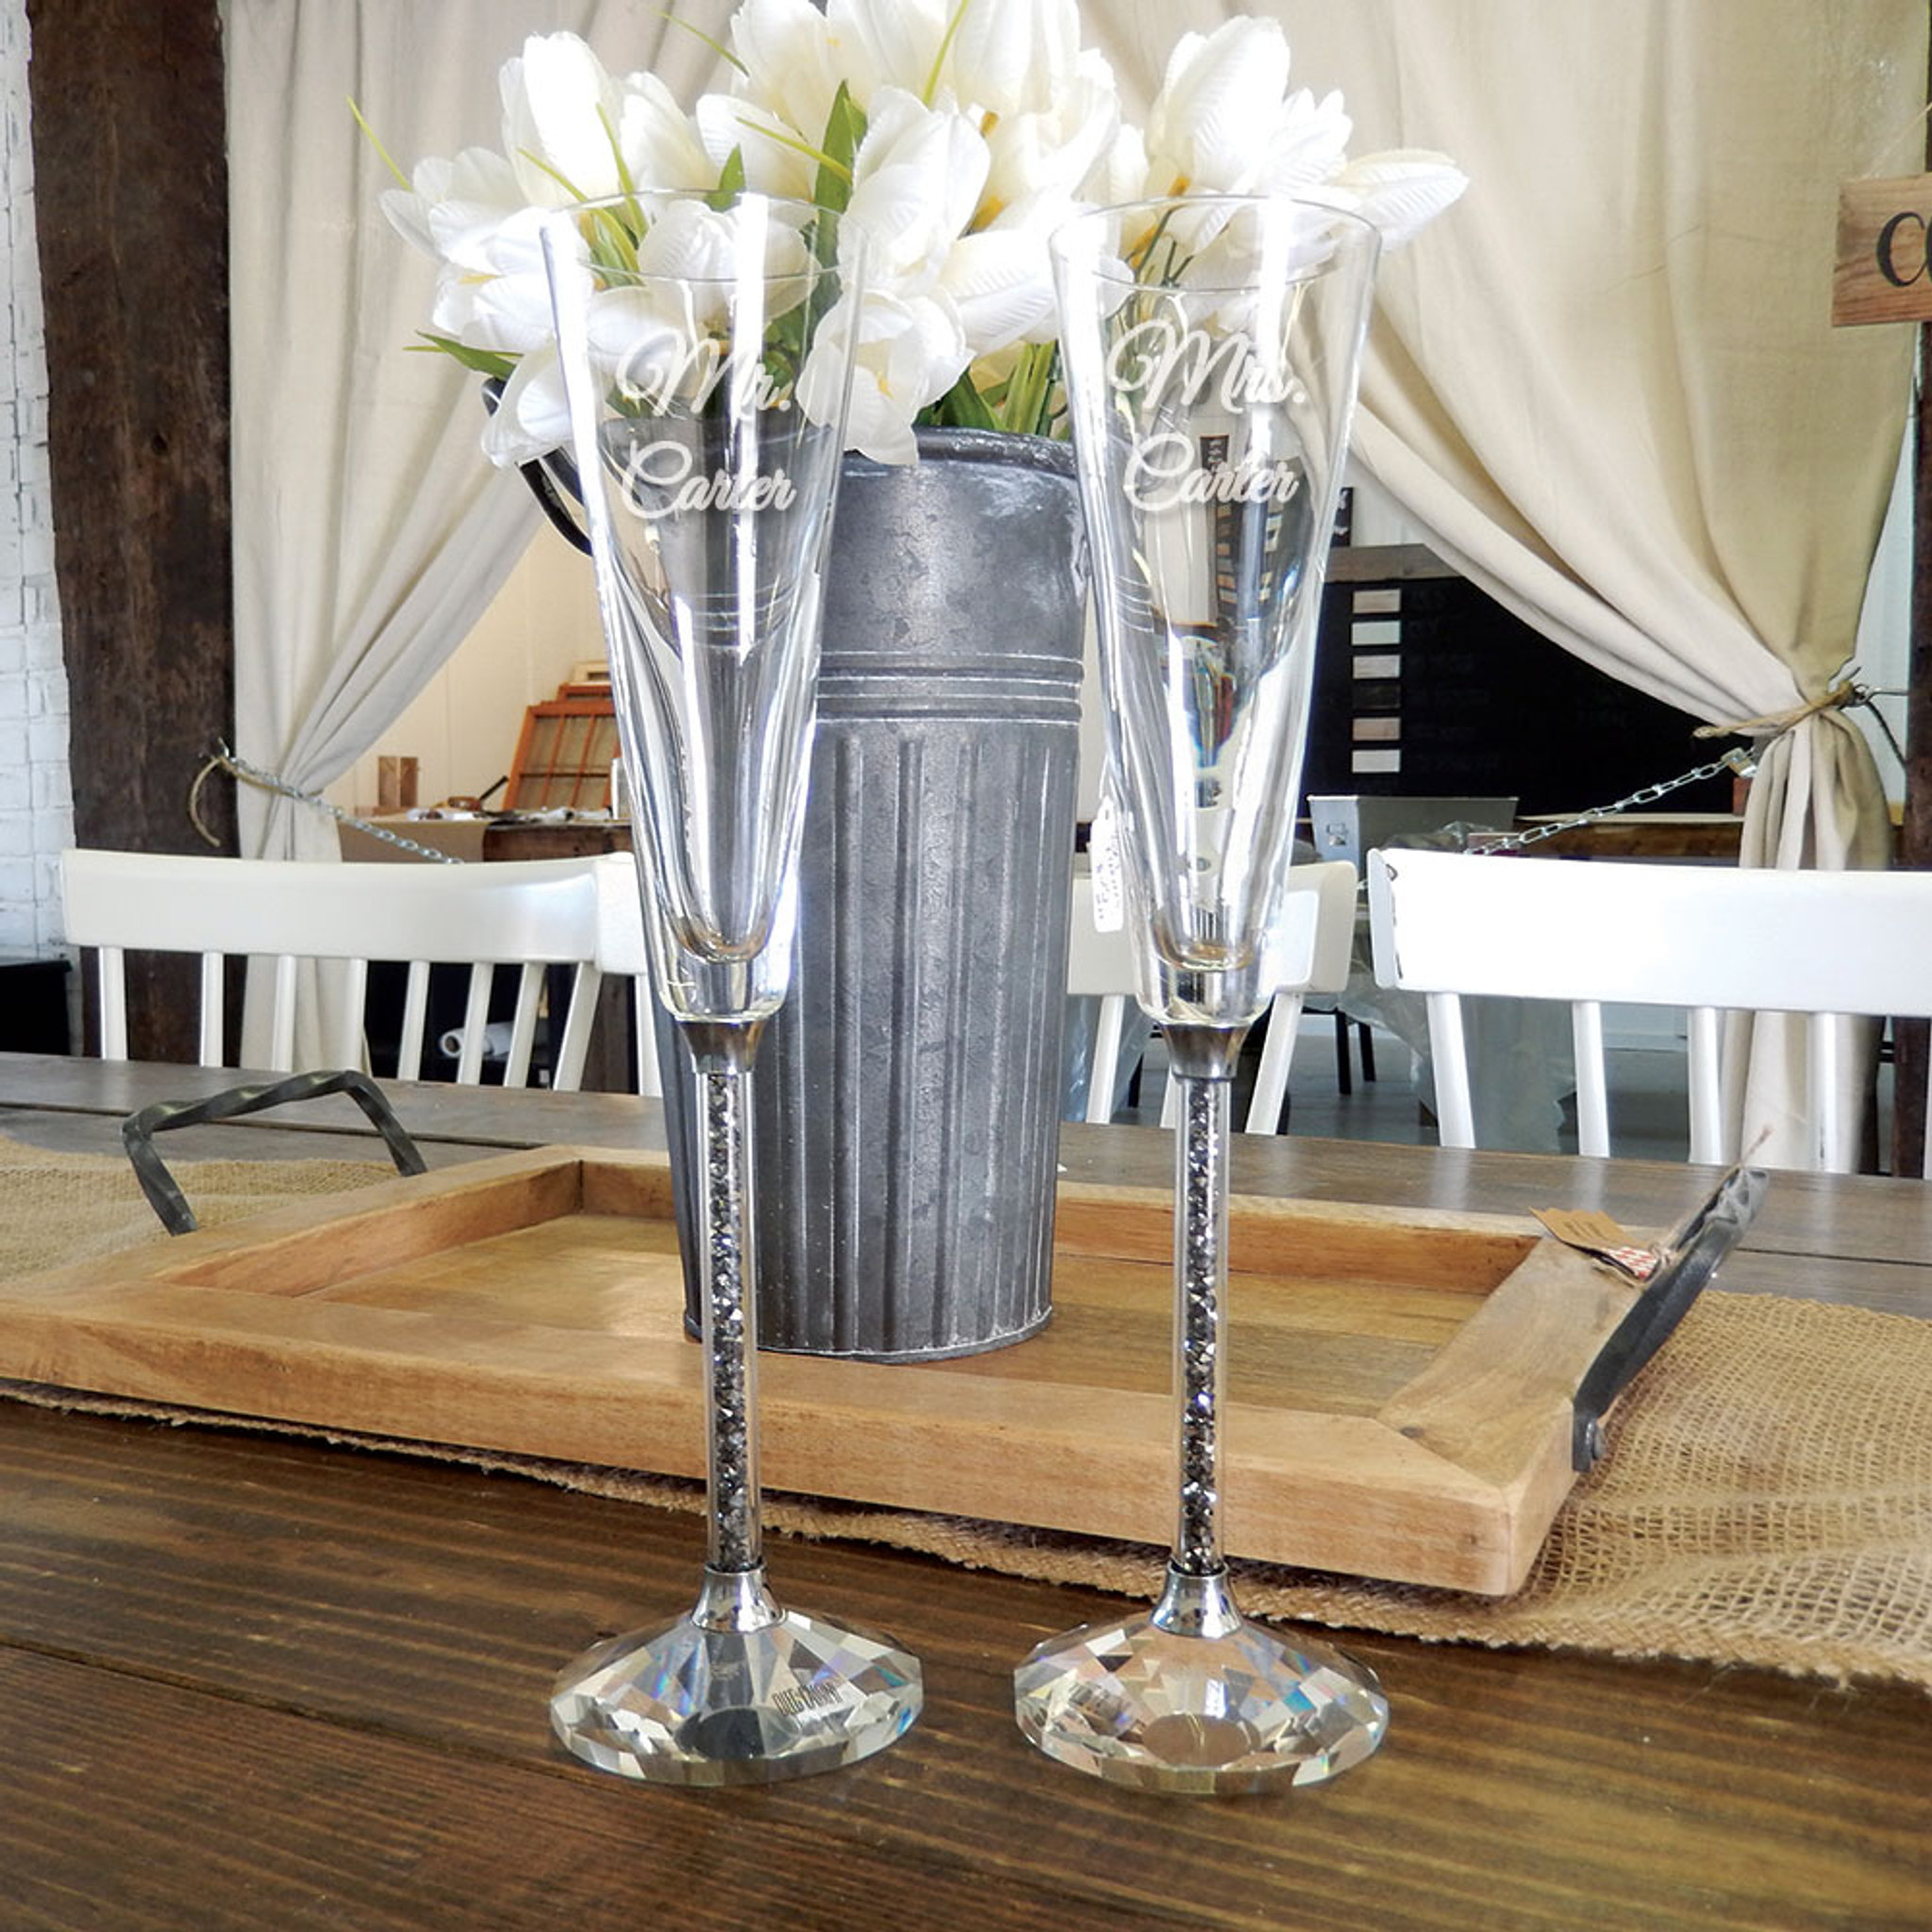 Swarovski Crystal Wedding Toast Set, Champagne Glasses, Wedding